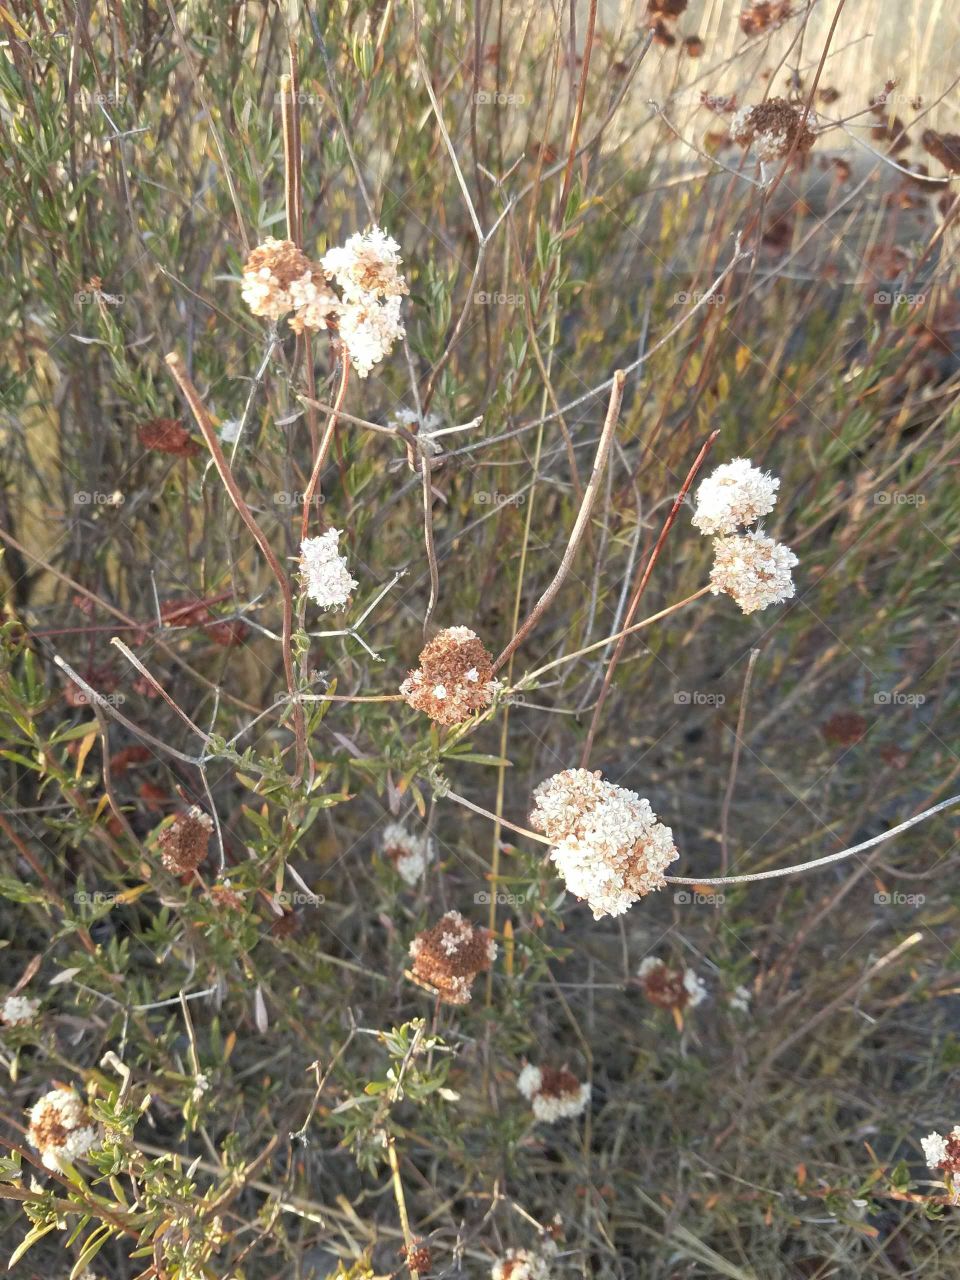 desert flowers bloom all year long. California winter